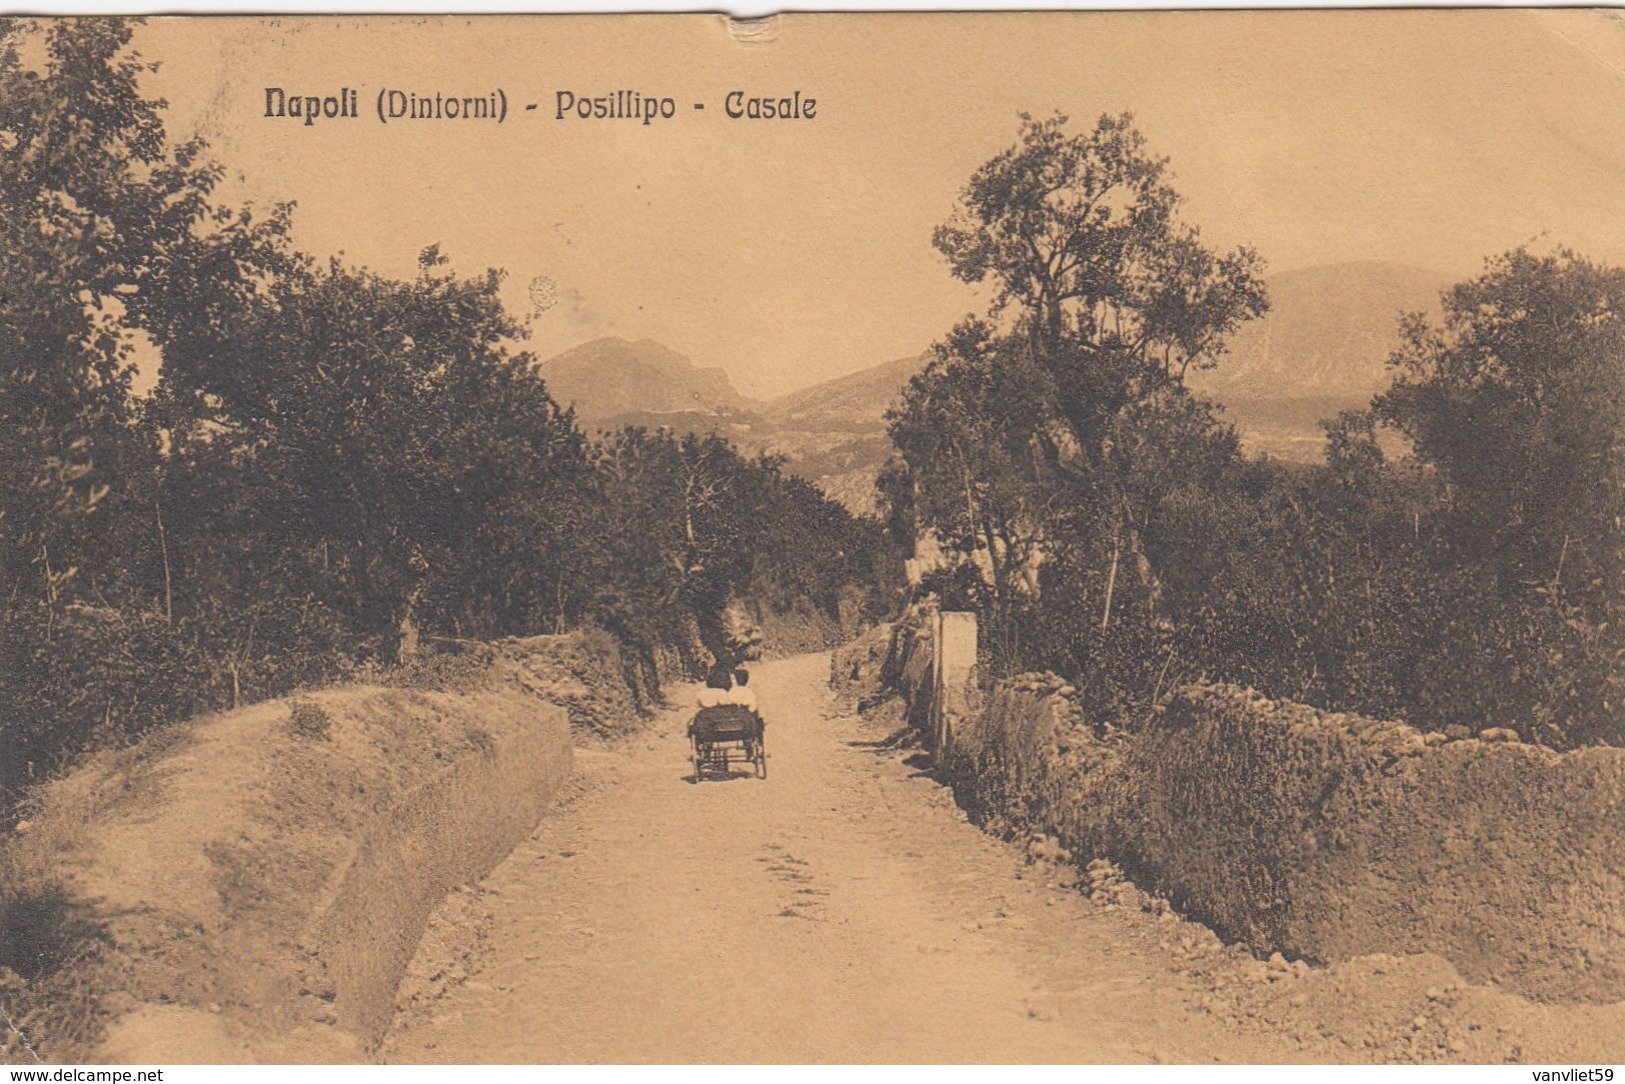 NAPOLI-DINTORNI POSILLIPO-CASALE CARTOLINA VIAGGIATA IL 12-1-1910 - Napoli